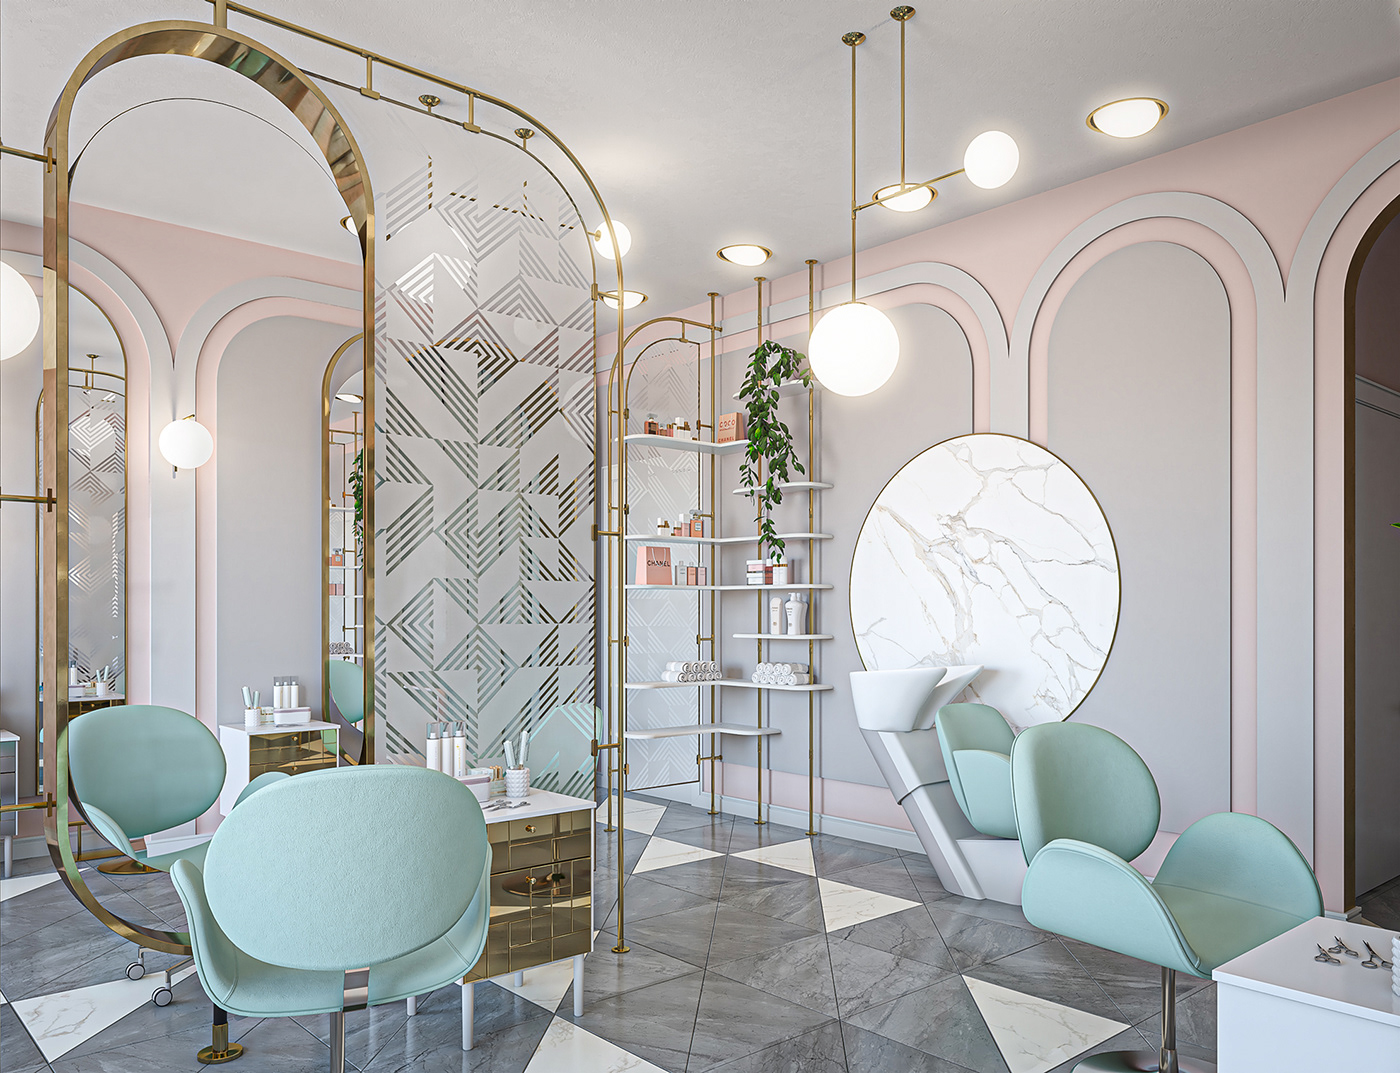 3D archvis beauty salon design Interior Memphis mint color